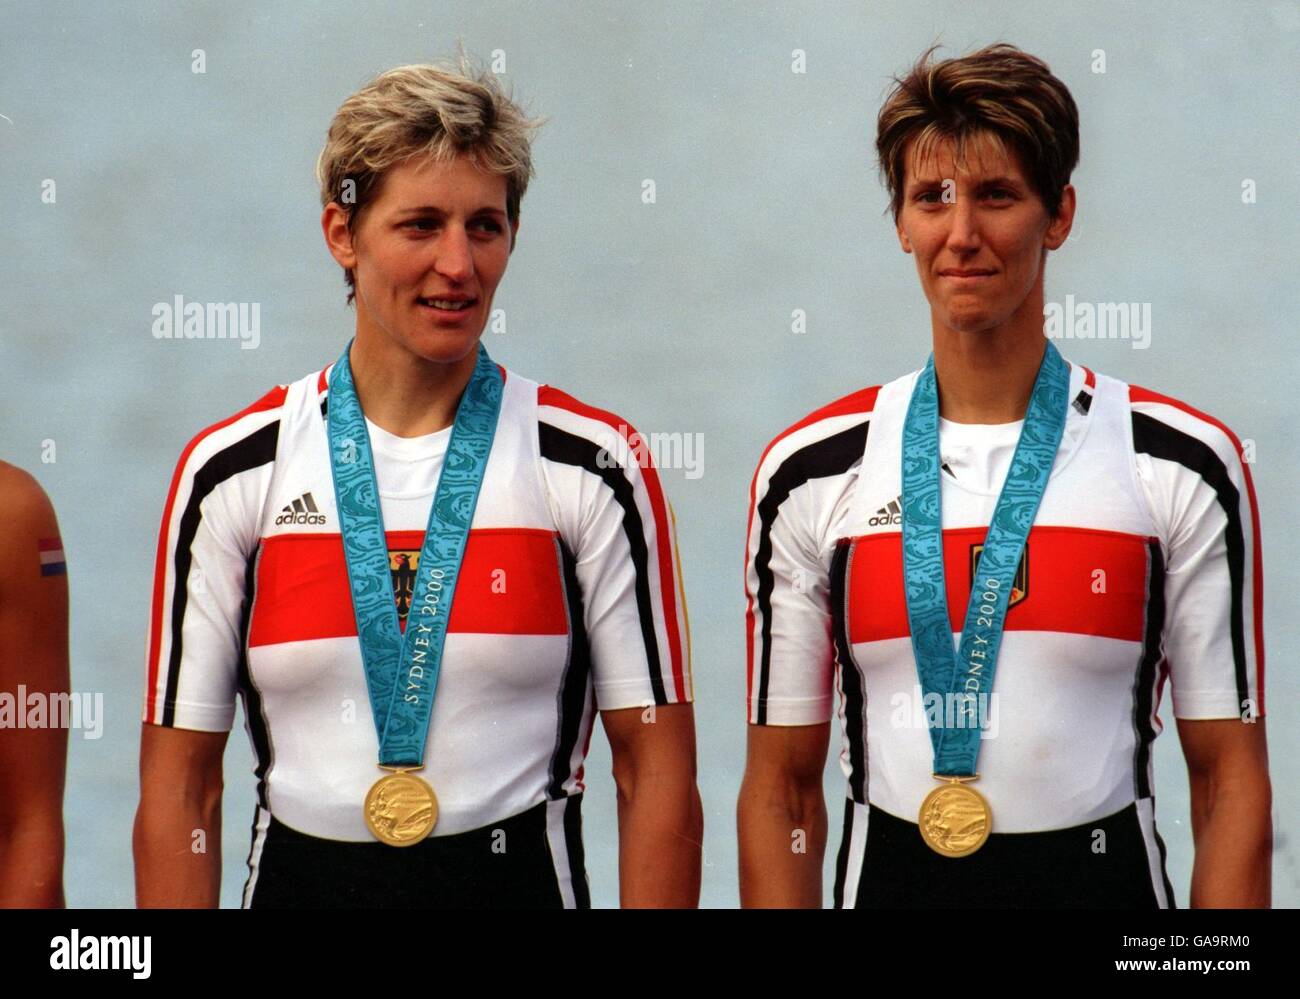 Olympische Spiele 2000 in Sydney - Rudern. l-r; das deutsche Doppelzweier-Team von Kathrin Boron und Jana Thieme feiert den Gewinn der Goldmedaille Stockfoto